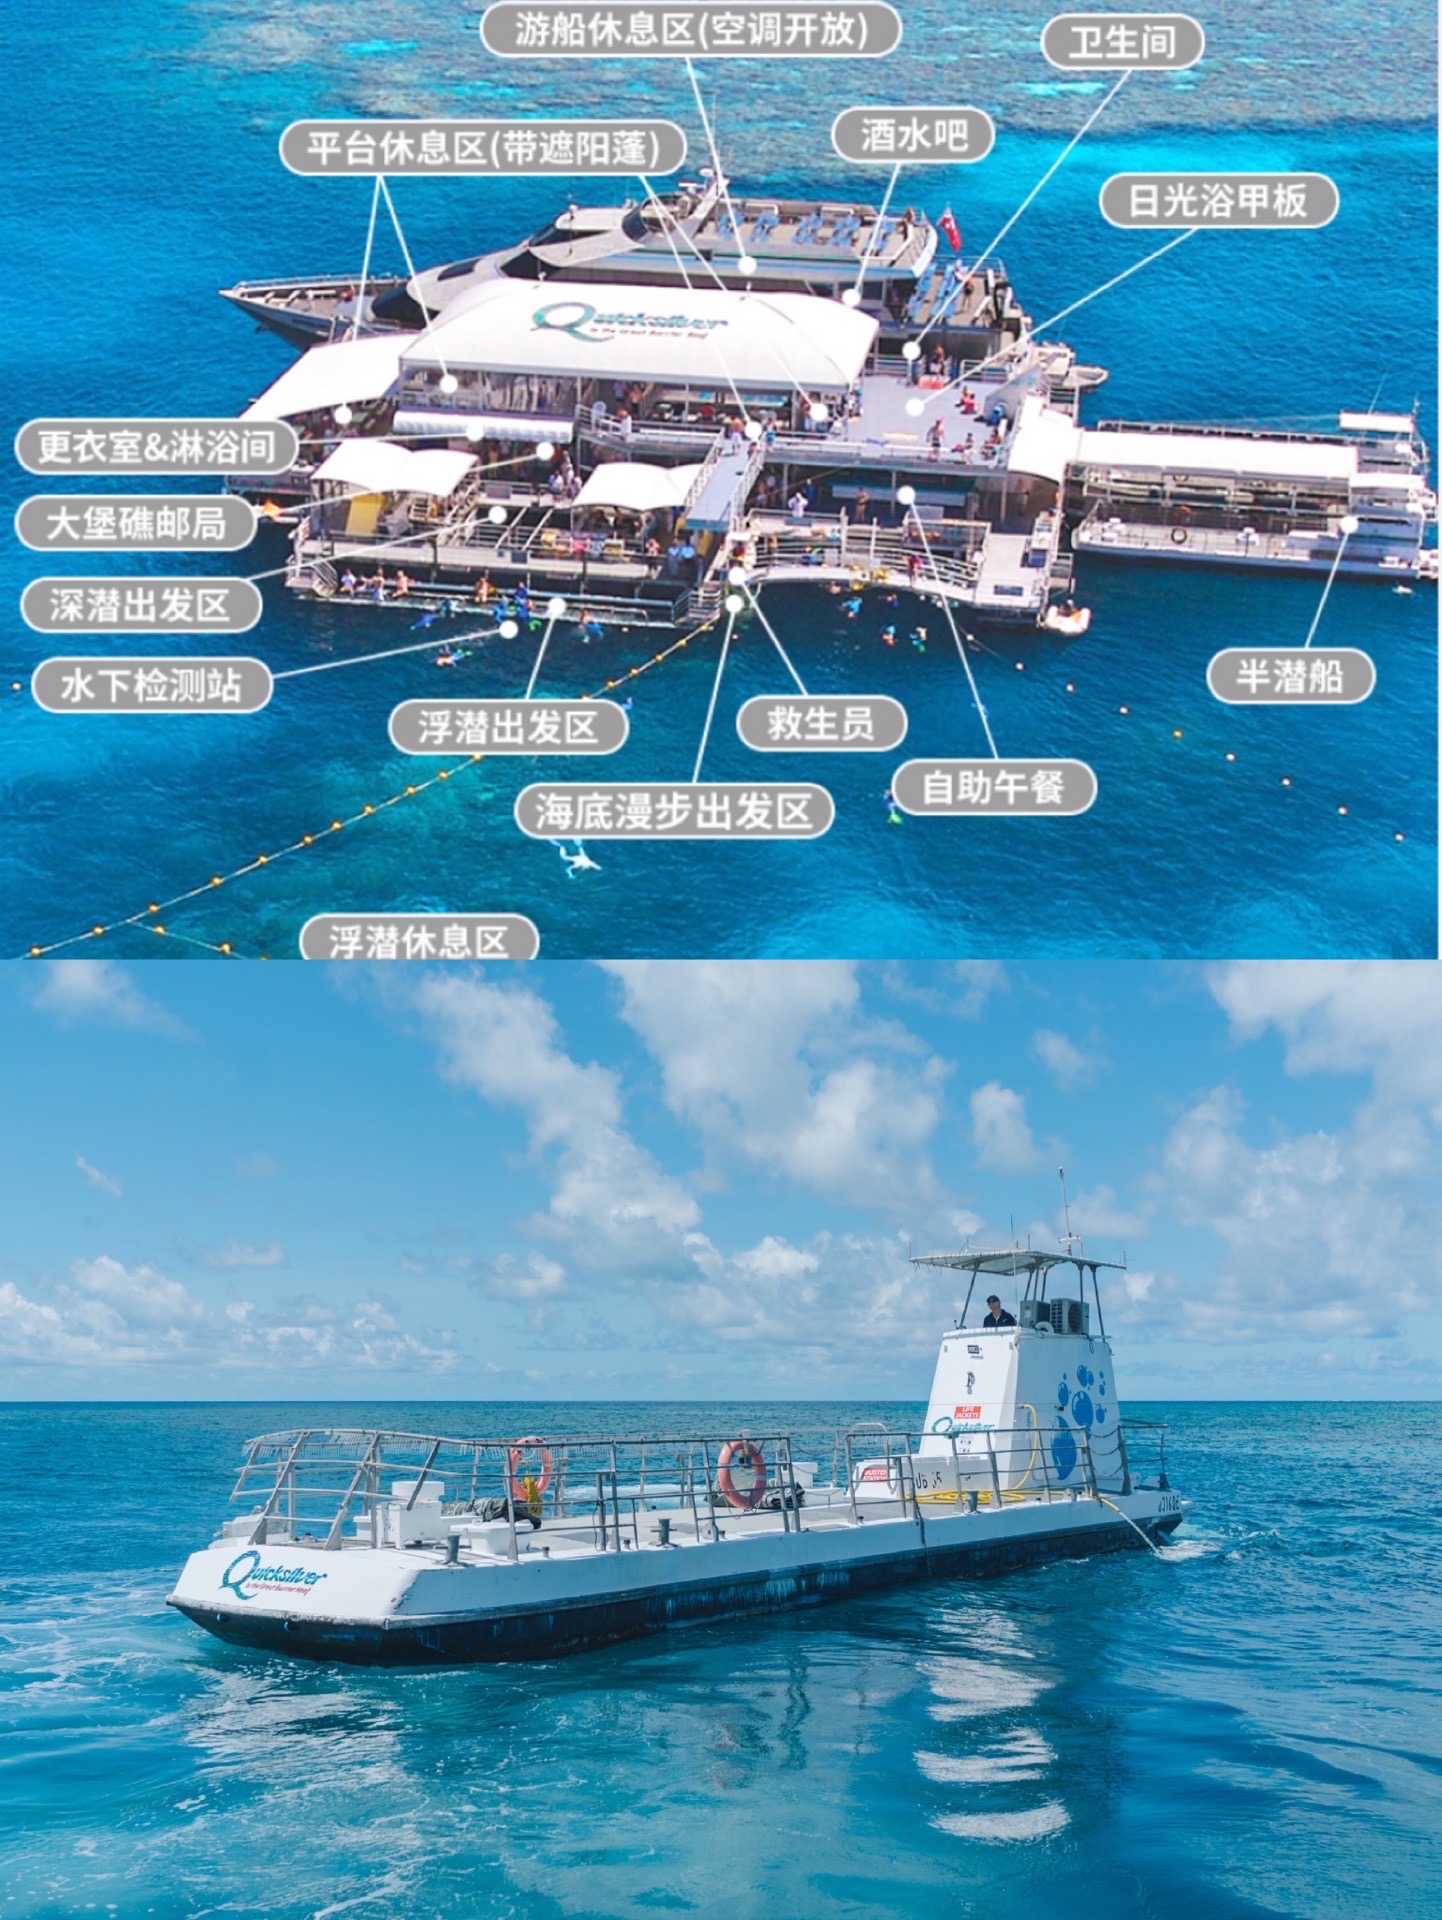 到了大堡礁怎么能不去浮潜呢，坐双层的快艇出海享受各种海上项目还是非常值得推荐的。综合了几个热门的堡礁